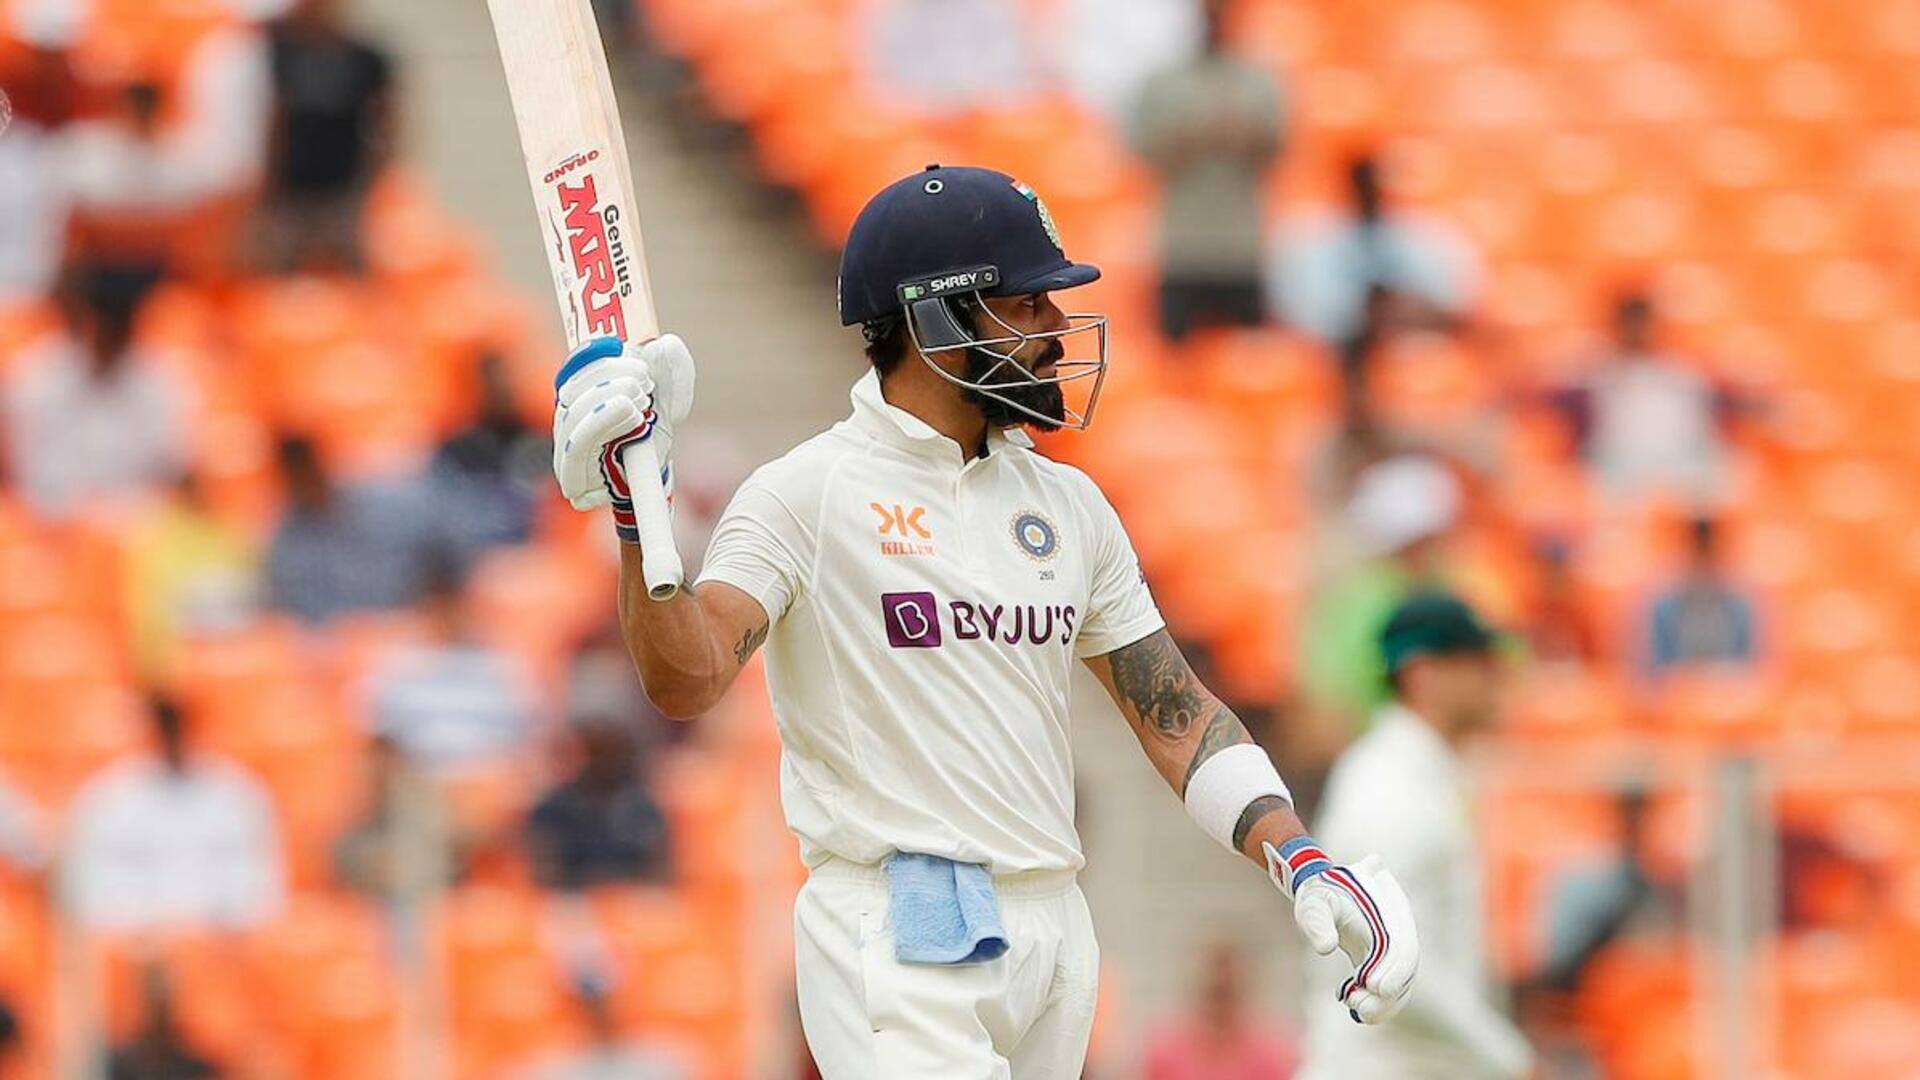 भारत बनाम ऑस्ट्रेलिया: विराट कोहली ने एक टेस्ट पारी में खेली अपनी दूसरी सर्वाधिक गेंदें